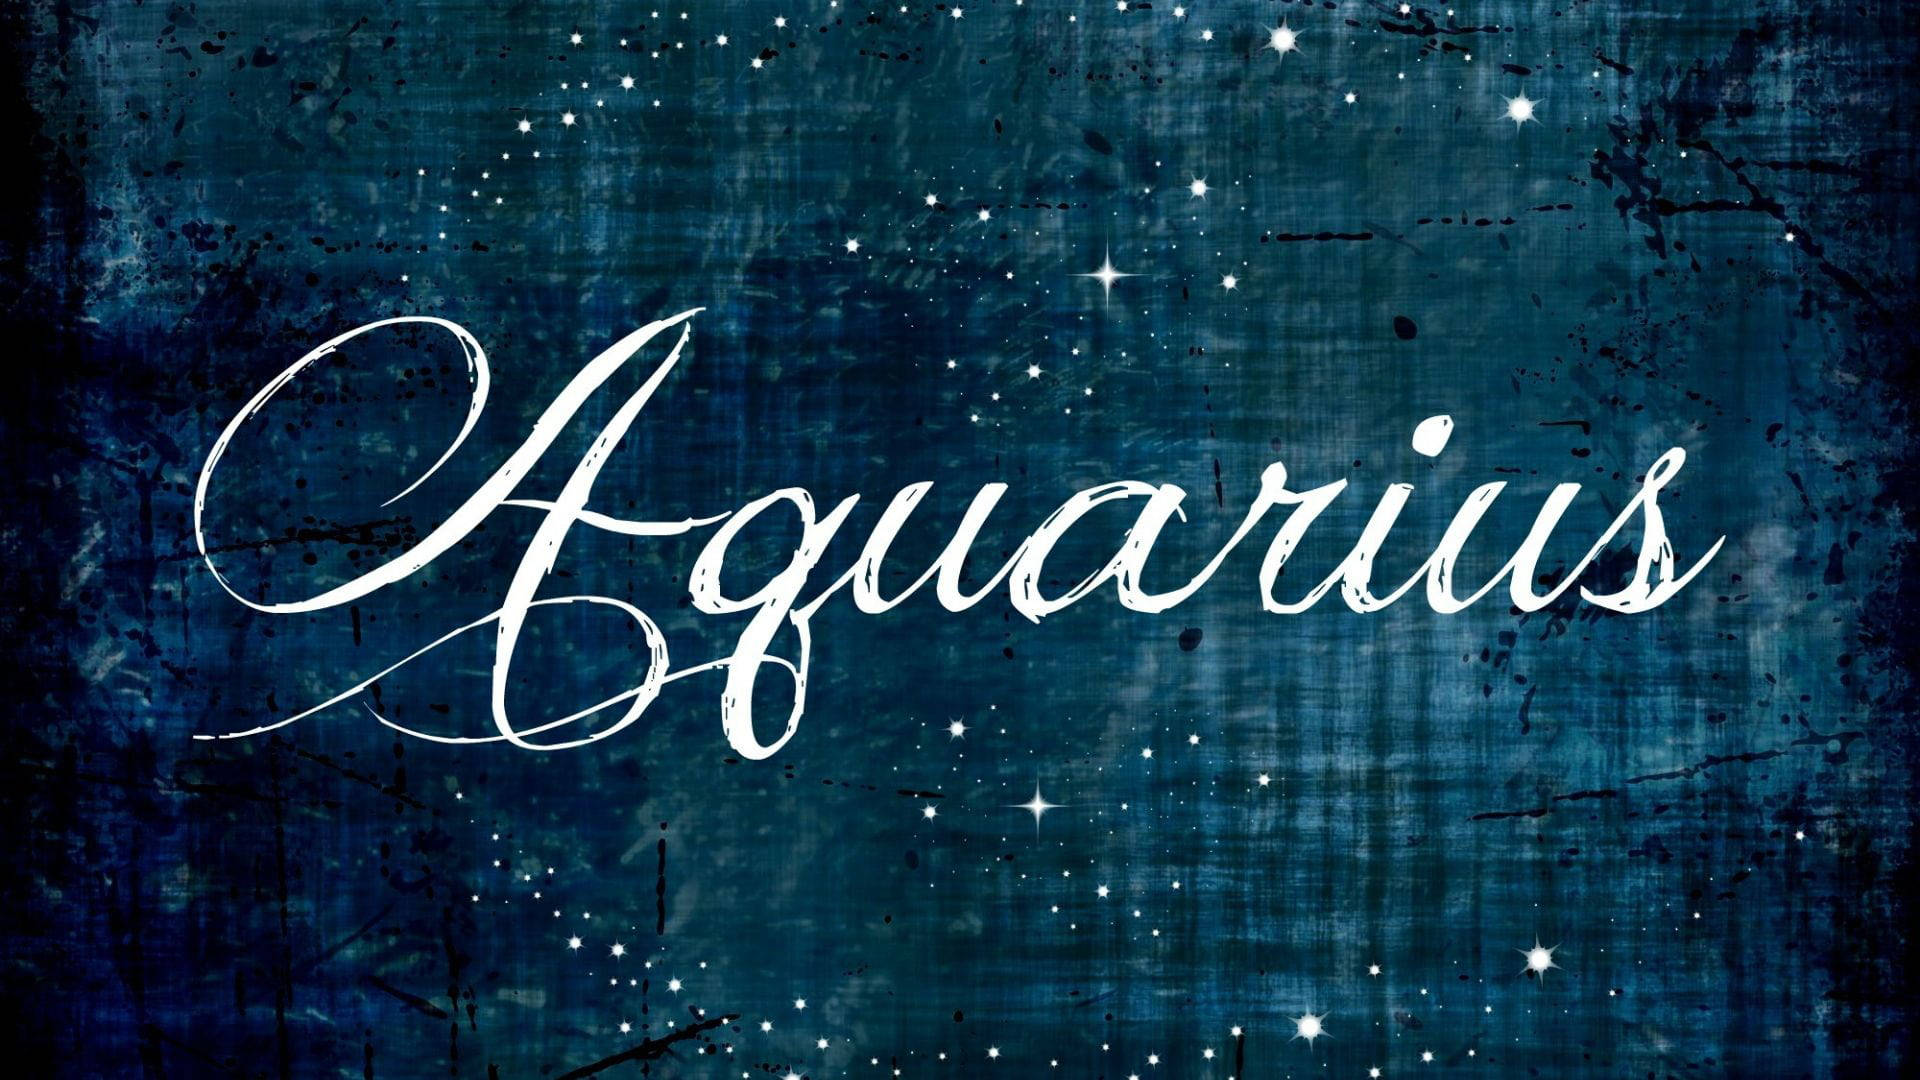 Download Name Aquarius Wallpaper | Wallpapers.com